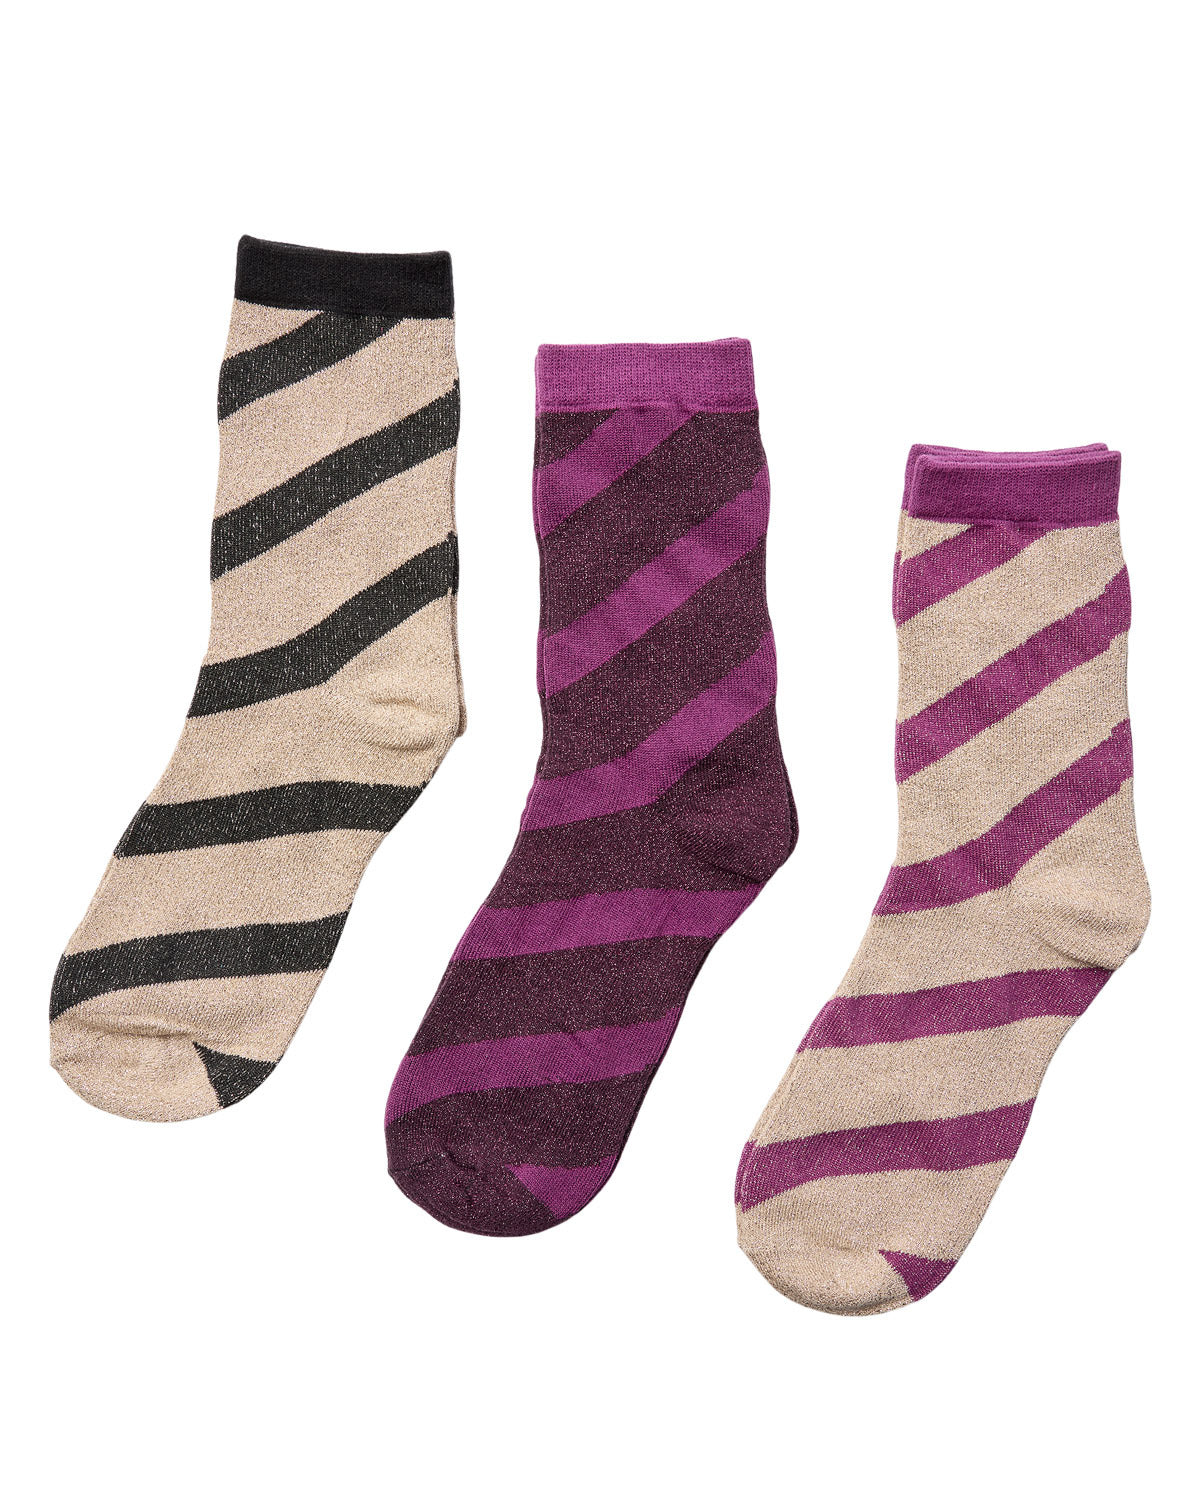 
                  
                    NUENA Multi Socks Set Of 3
                  
                